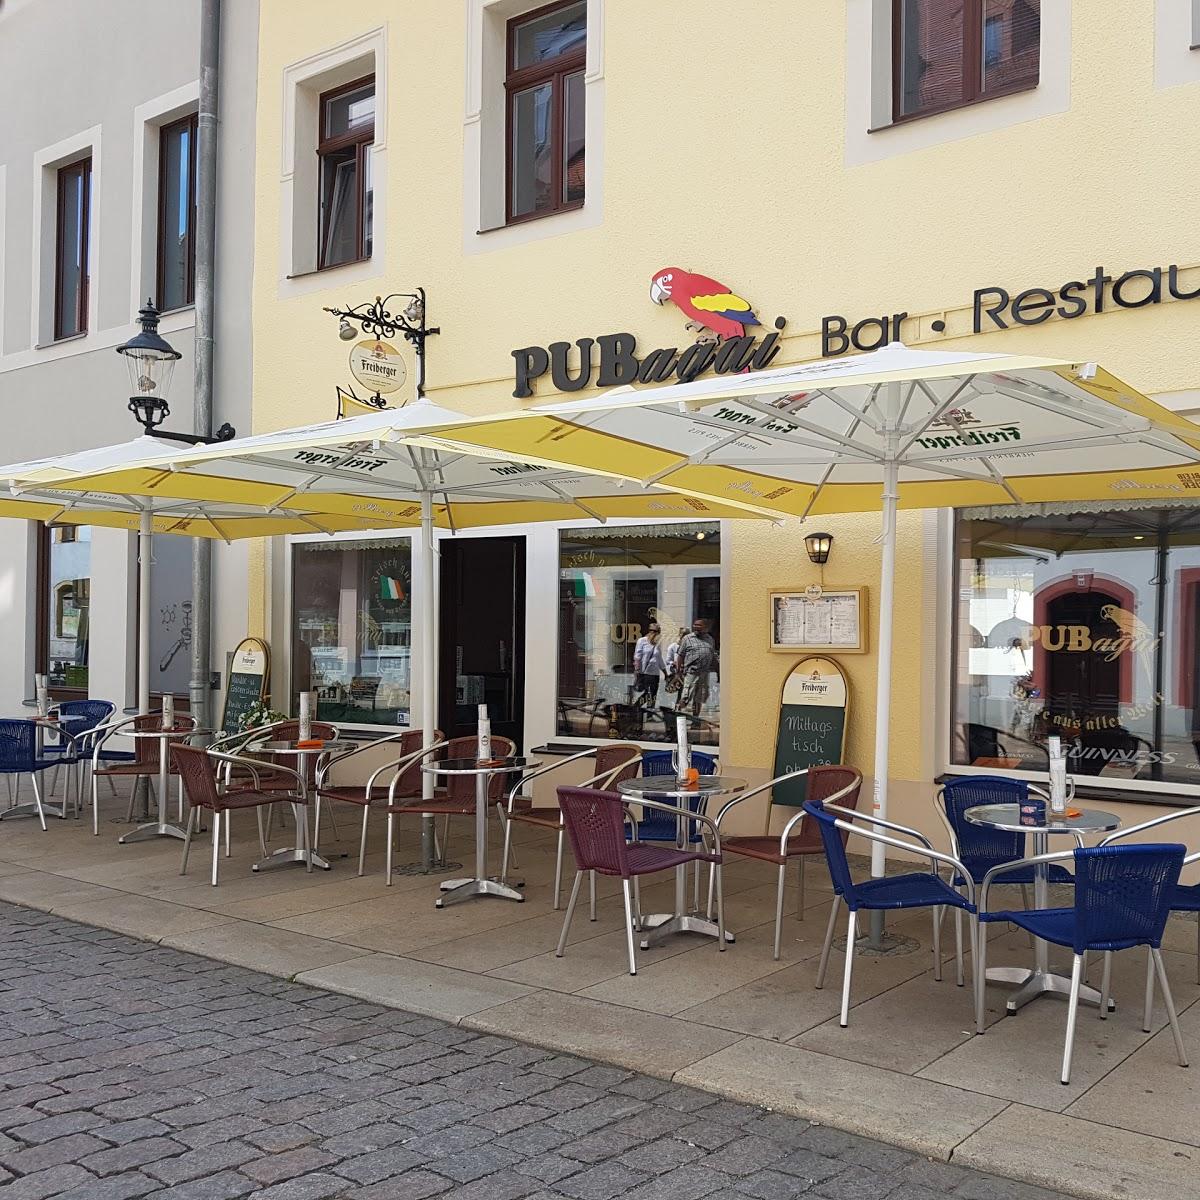 Restaurant "Restaurant Bar Mythos" in  Freiberg